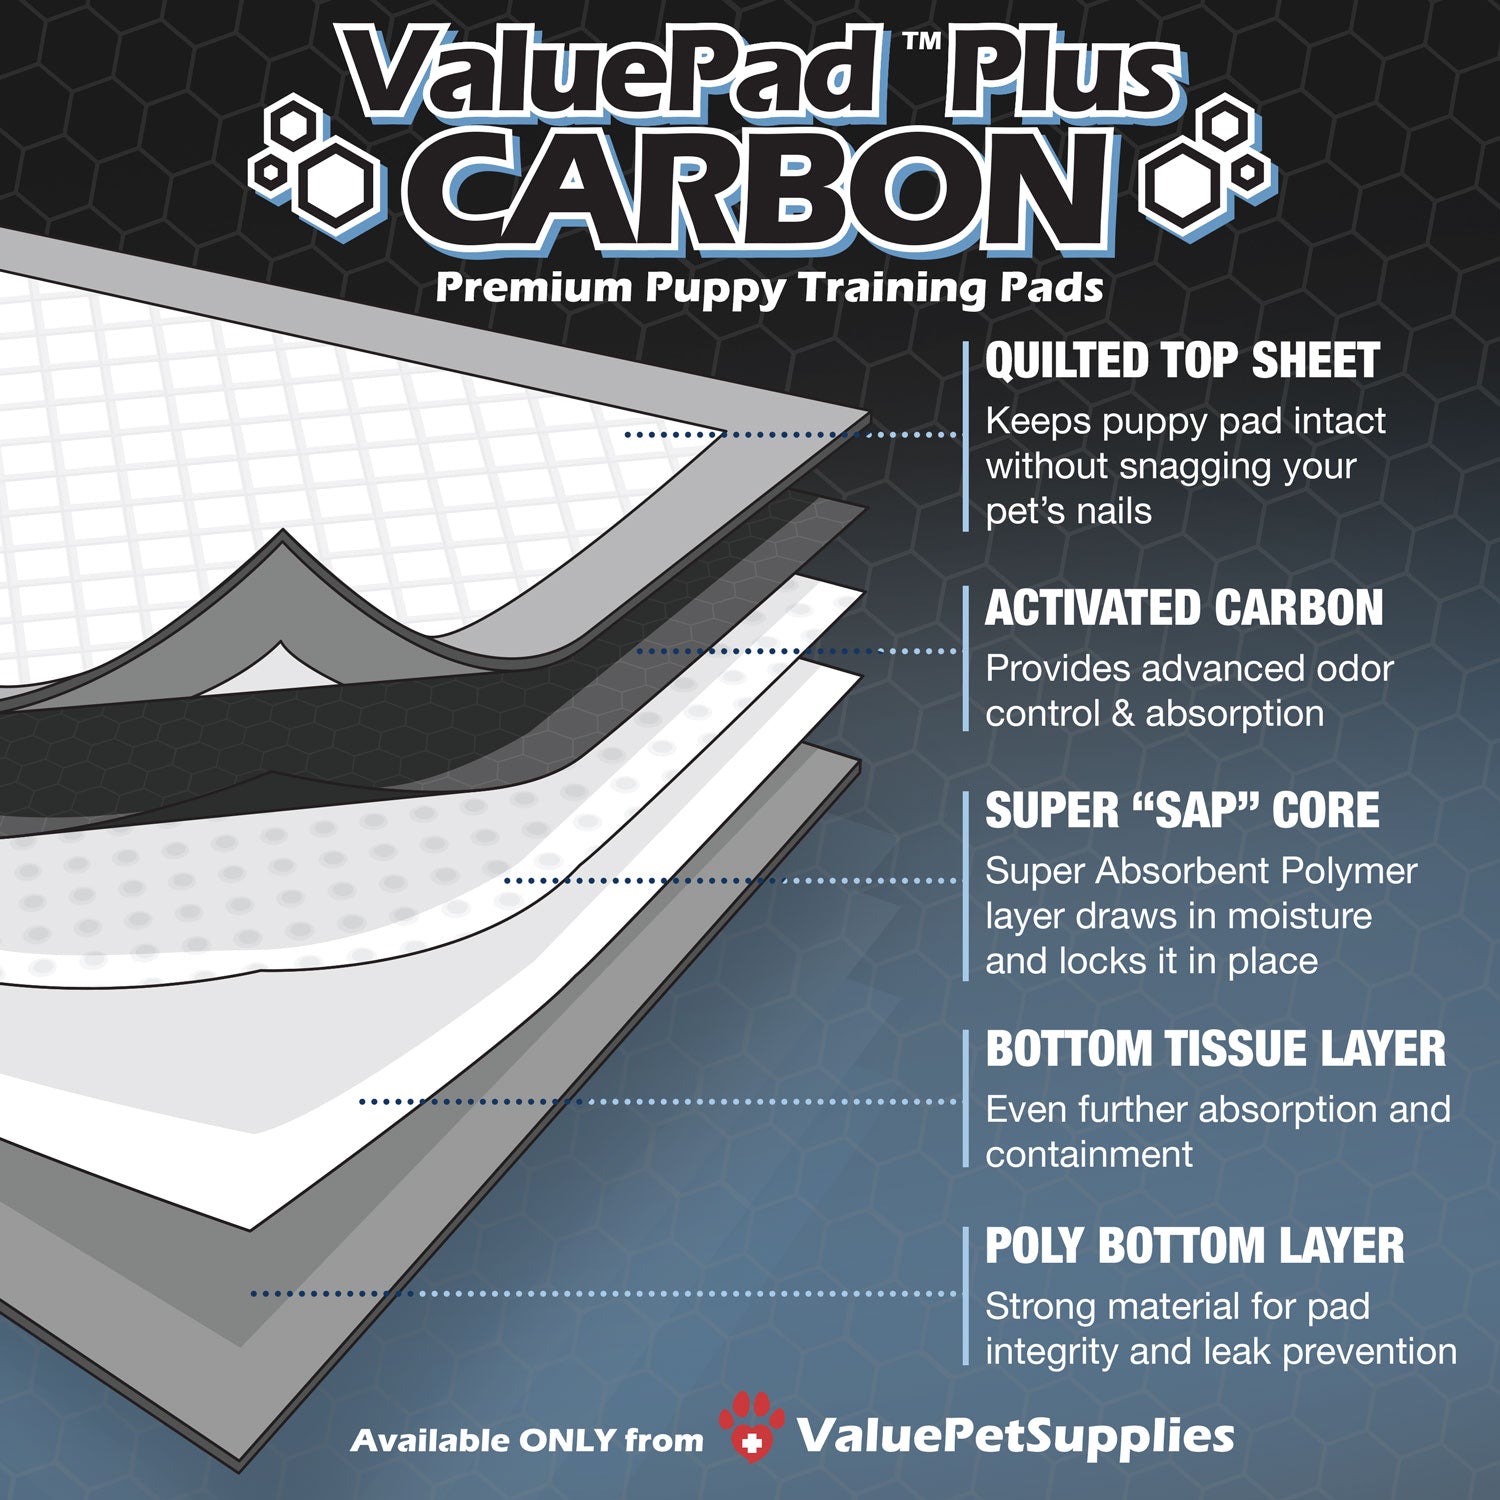 ValuePad Plus Carbon Puppy Pads, Medium 23x24 Inch, 25 Count